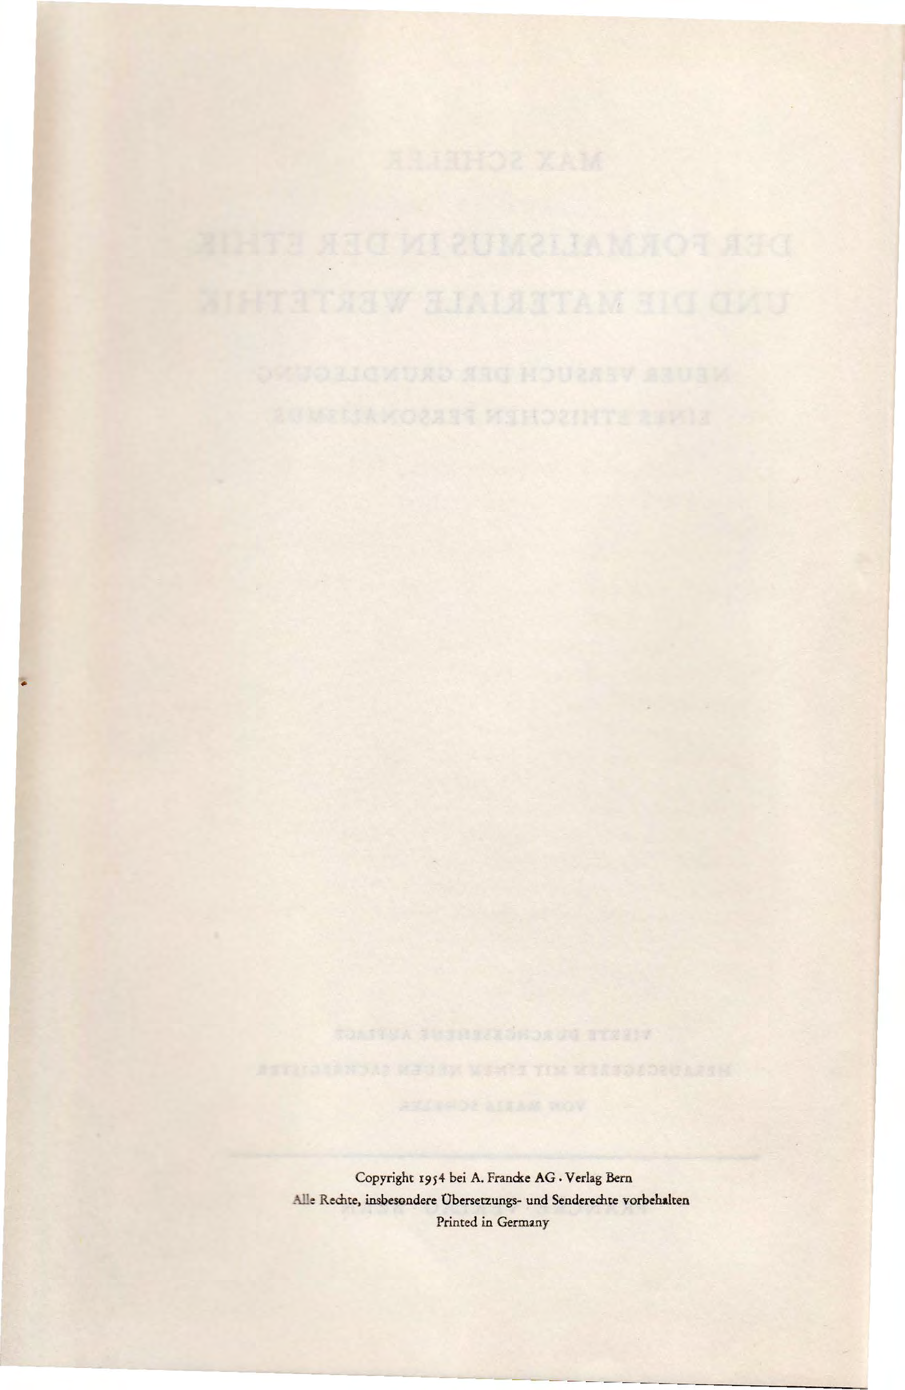 Copyright 1954 bei A. Frand<e AG. Verlag Bern.